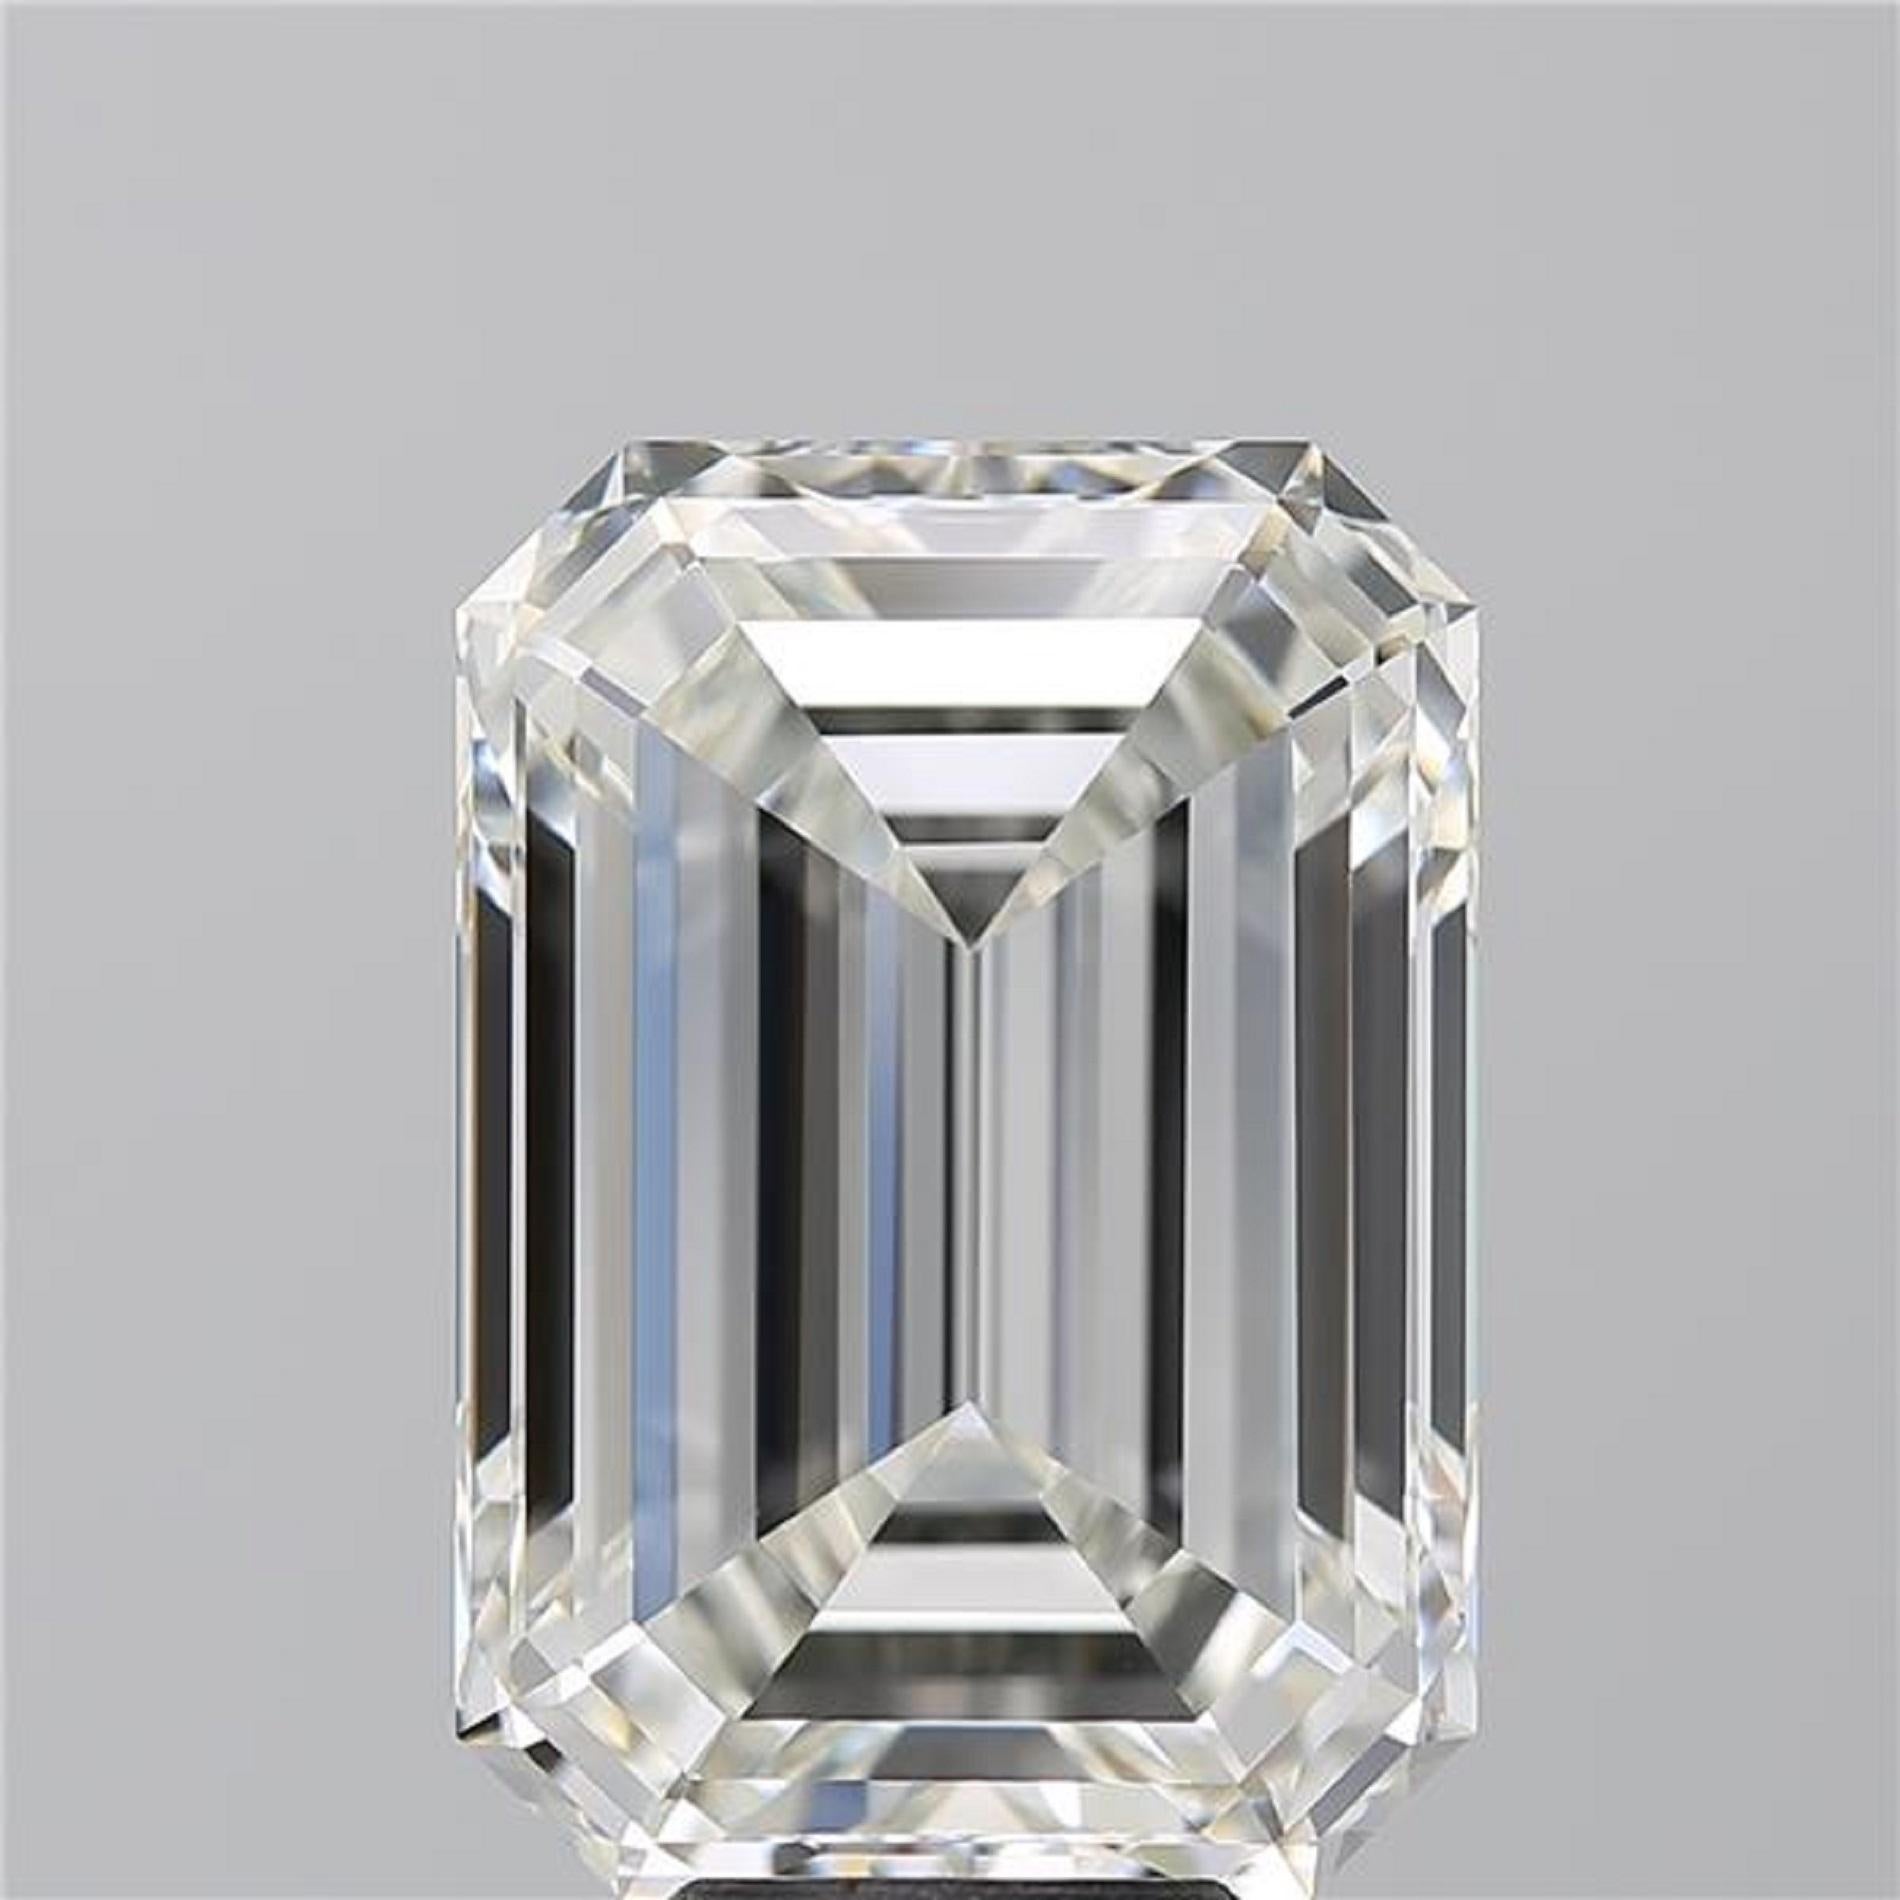 Cette bague exquise est ornée d'un époustouflant diamant taille émeraude de 7 carats certifié GIA, réputé pour sa clarté et sa taille remarquables. Le diamant est classé 